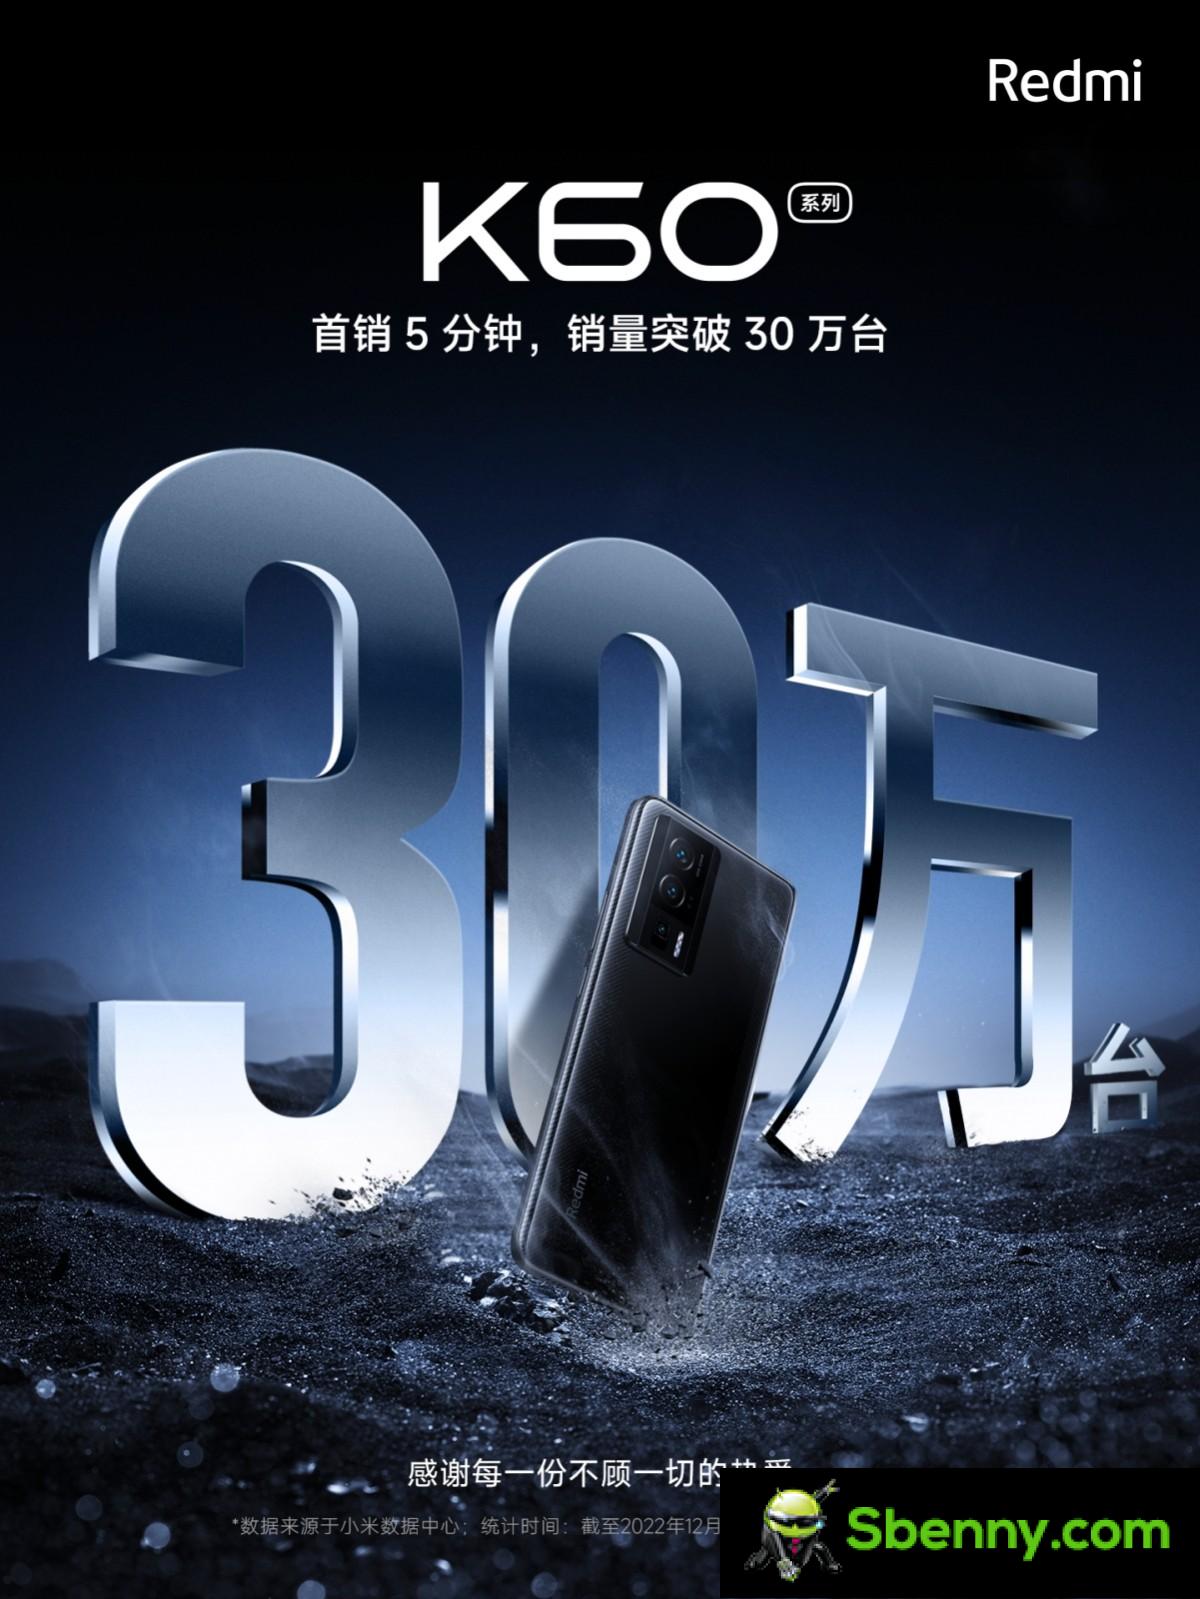 Xiaomi выпускает 300,000 60 телефонов Redmi K5 за XNUMX минут